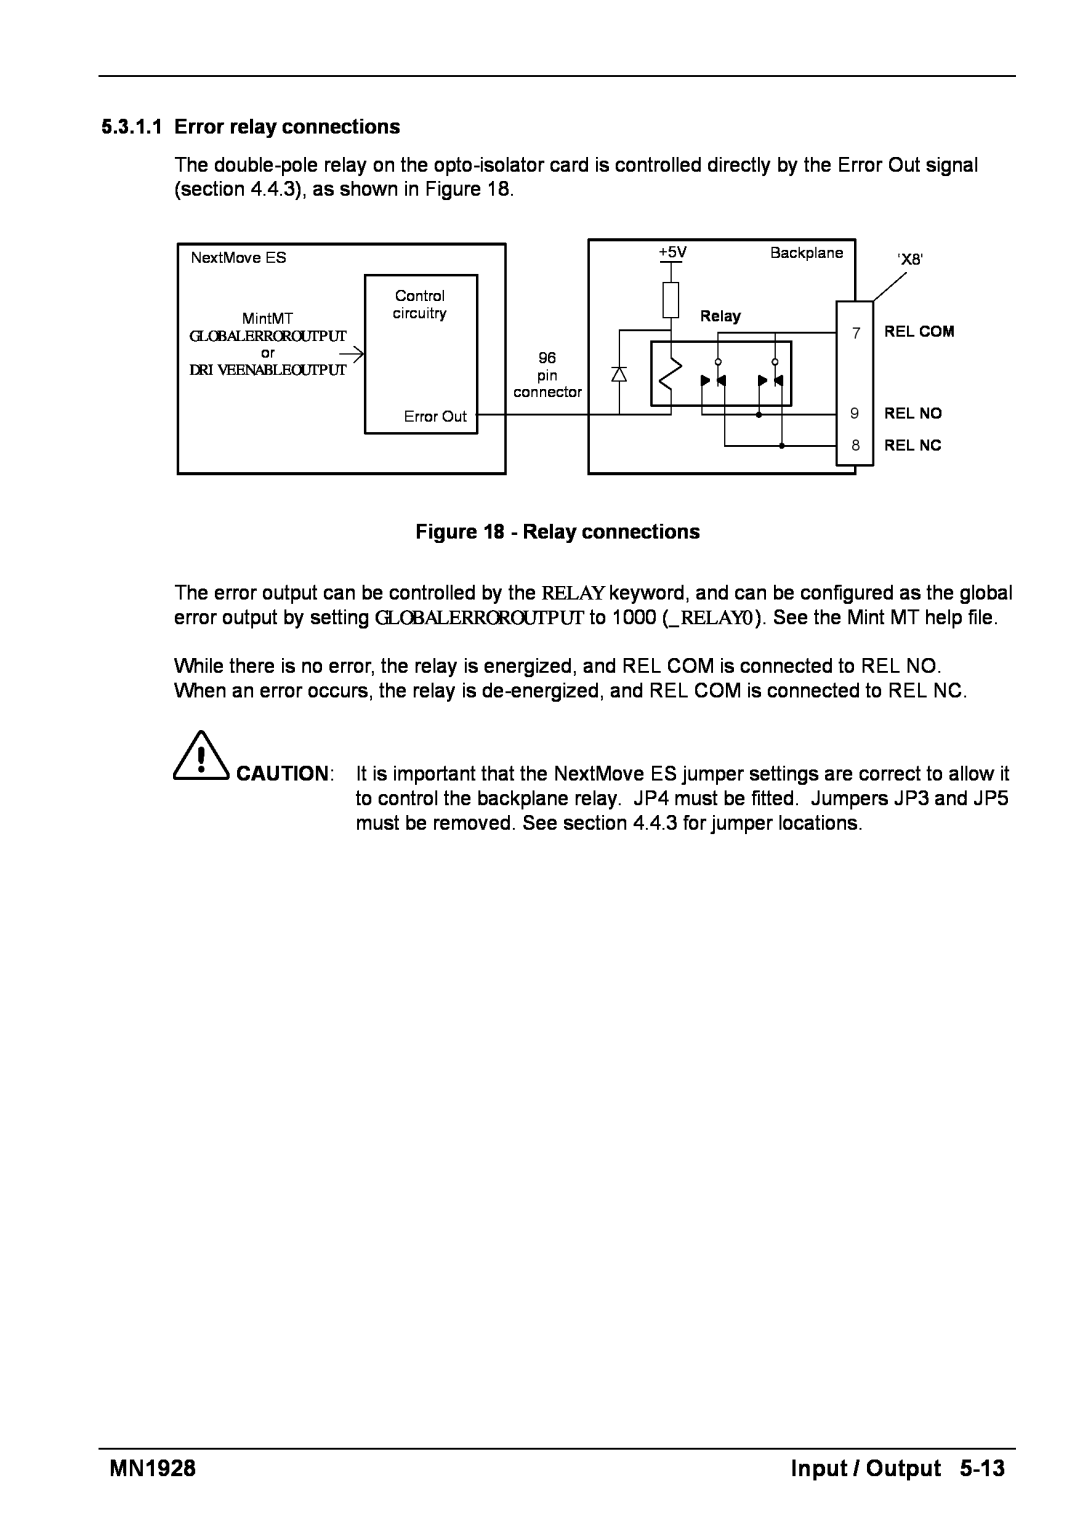 Baldor MN1928 installation manual Input / Output, 5.3.1.1Error relay connections, Relay connections, Rel No, Rel Nc 